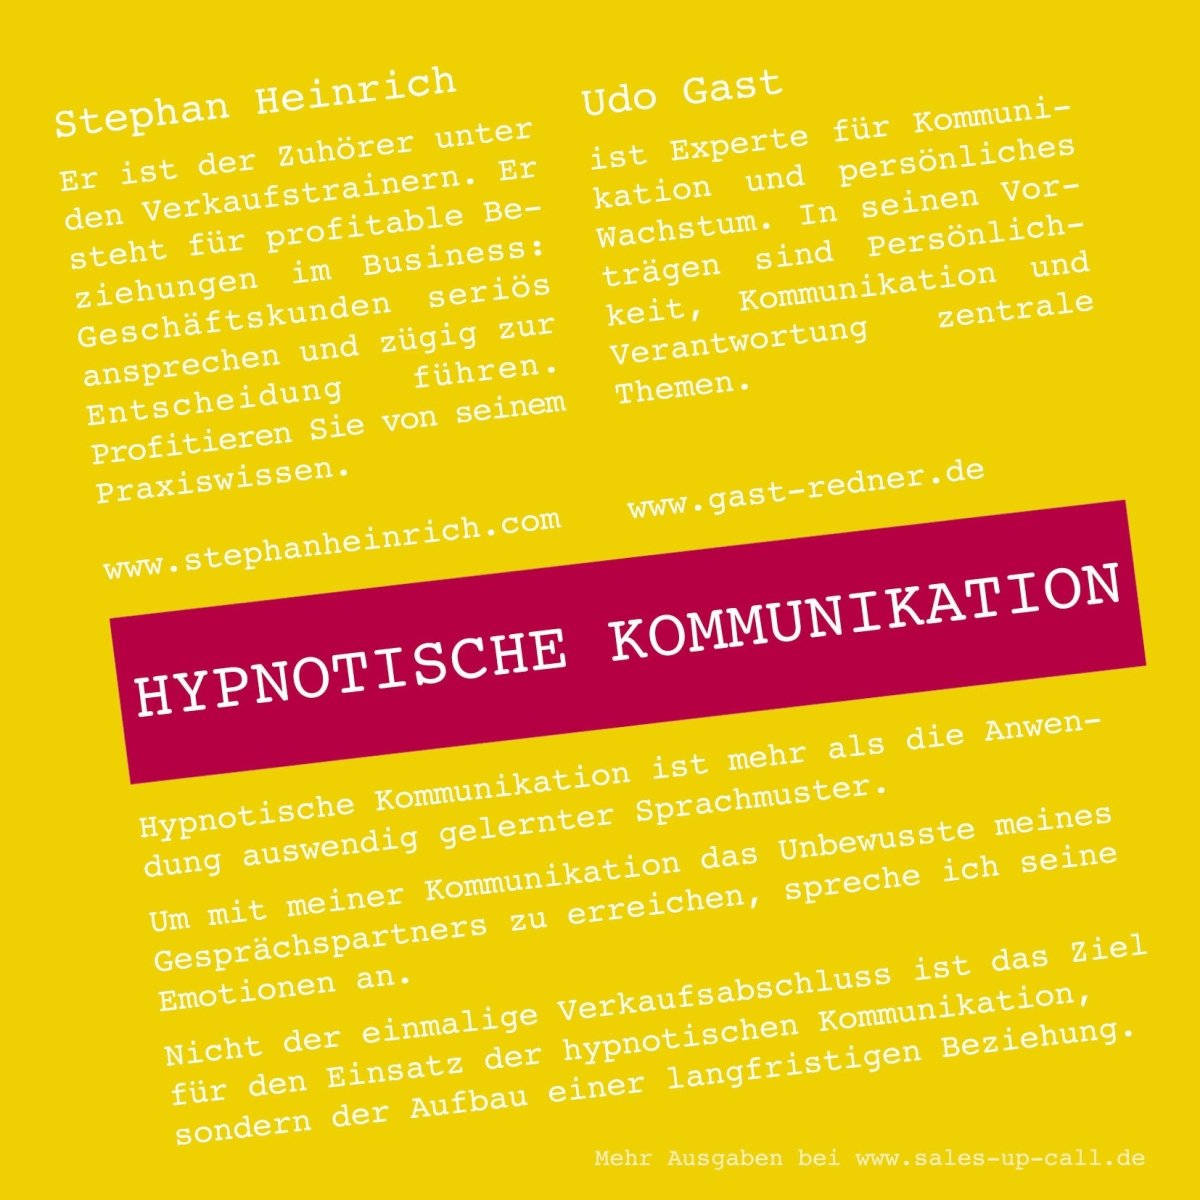 Hypnotische Kommunikation - Sales-up-Call - Stephan Heinrich